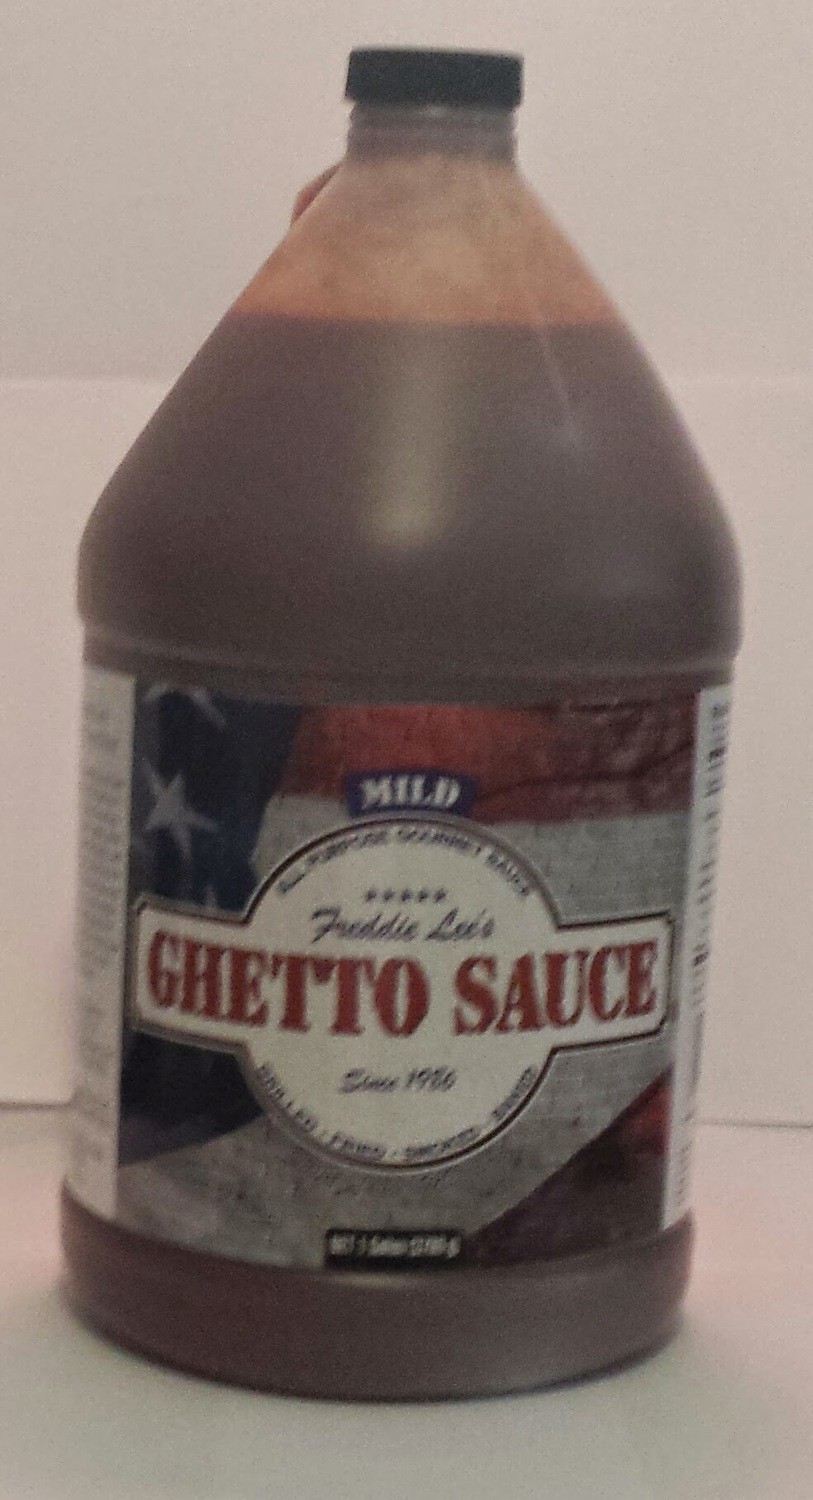 Freddie Lee's Ghetto Sauce Mild Gallon 128oz